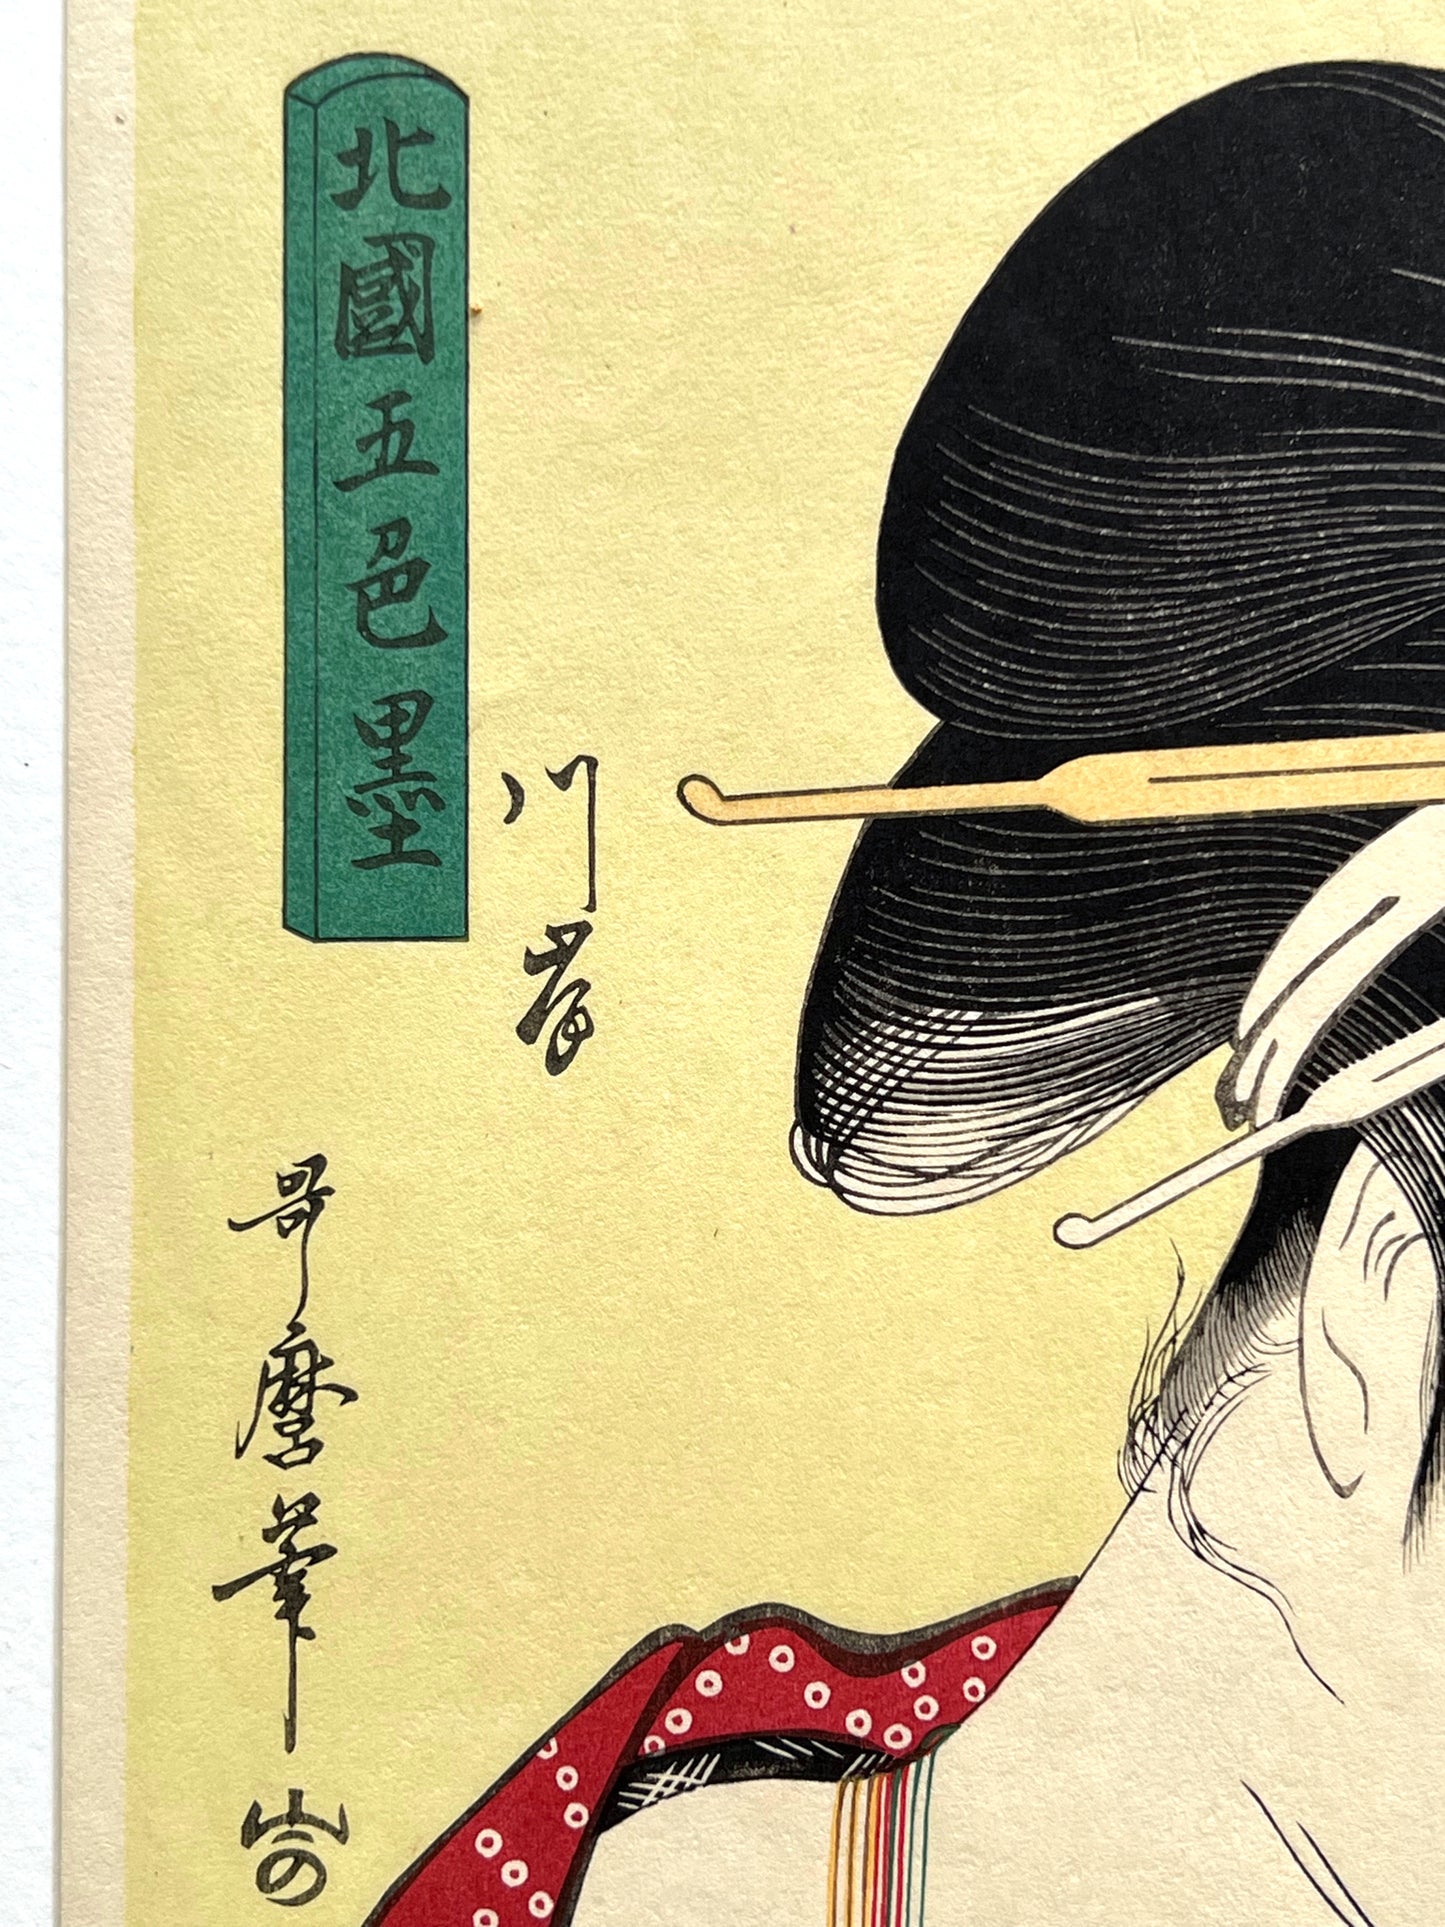 estampe japonaise geisha un sein nu, cure dent dans la bouche, cartouche calligraphie japonaise